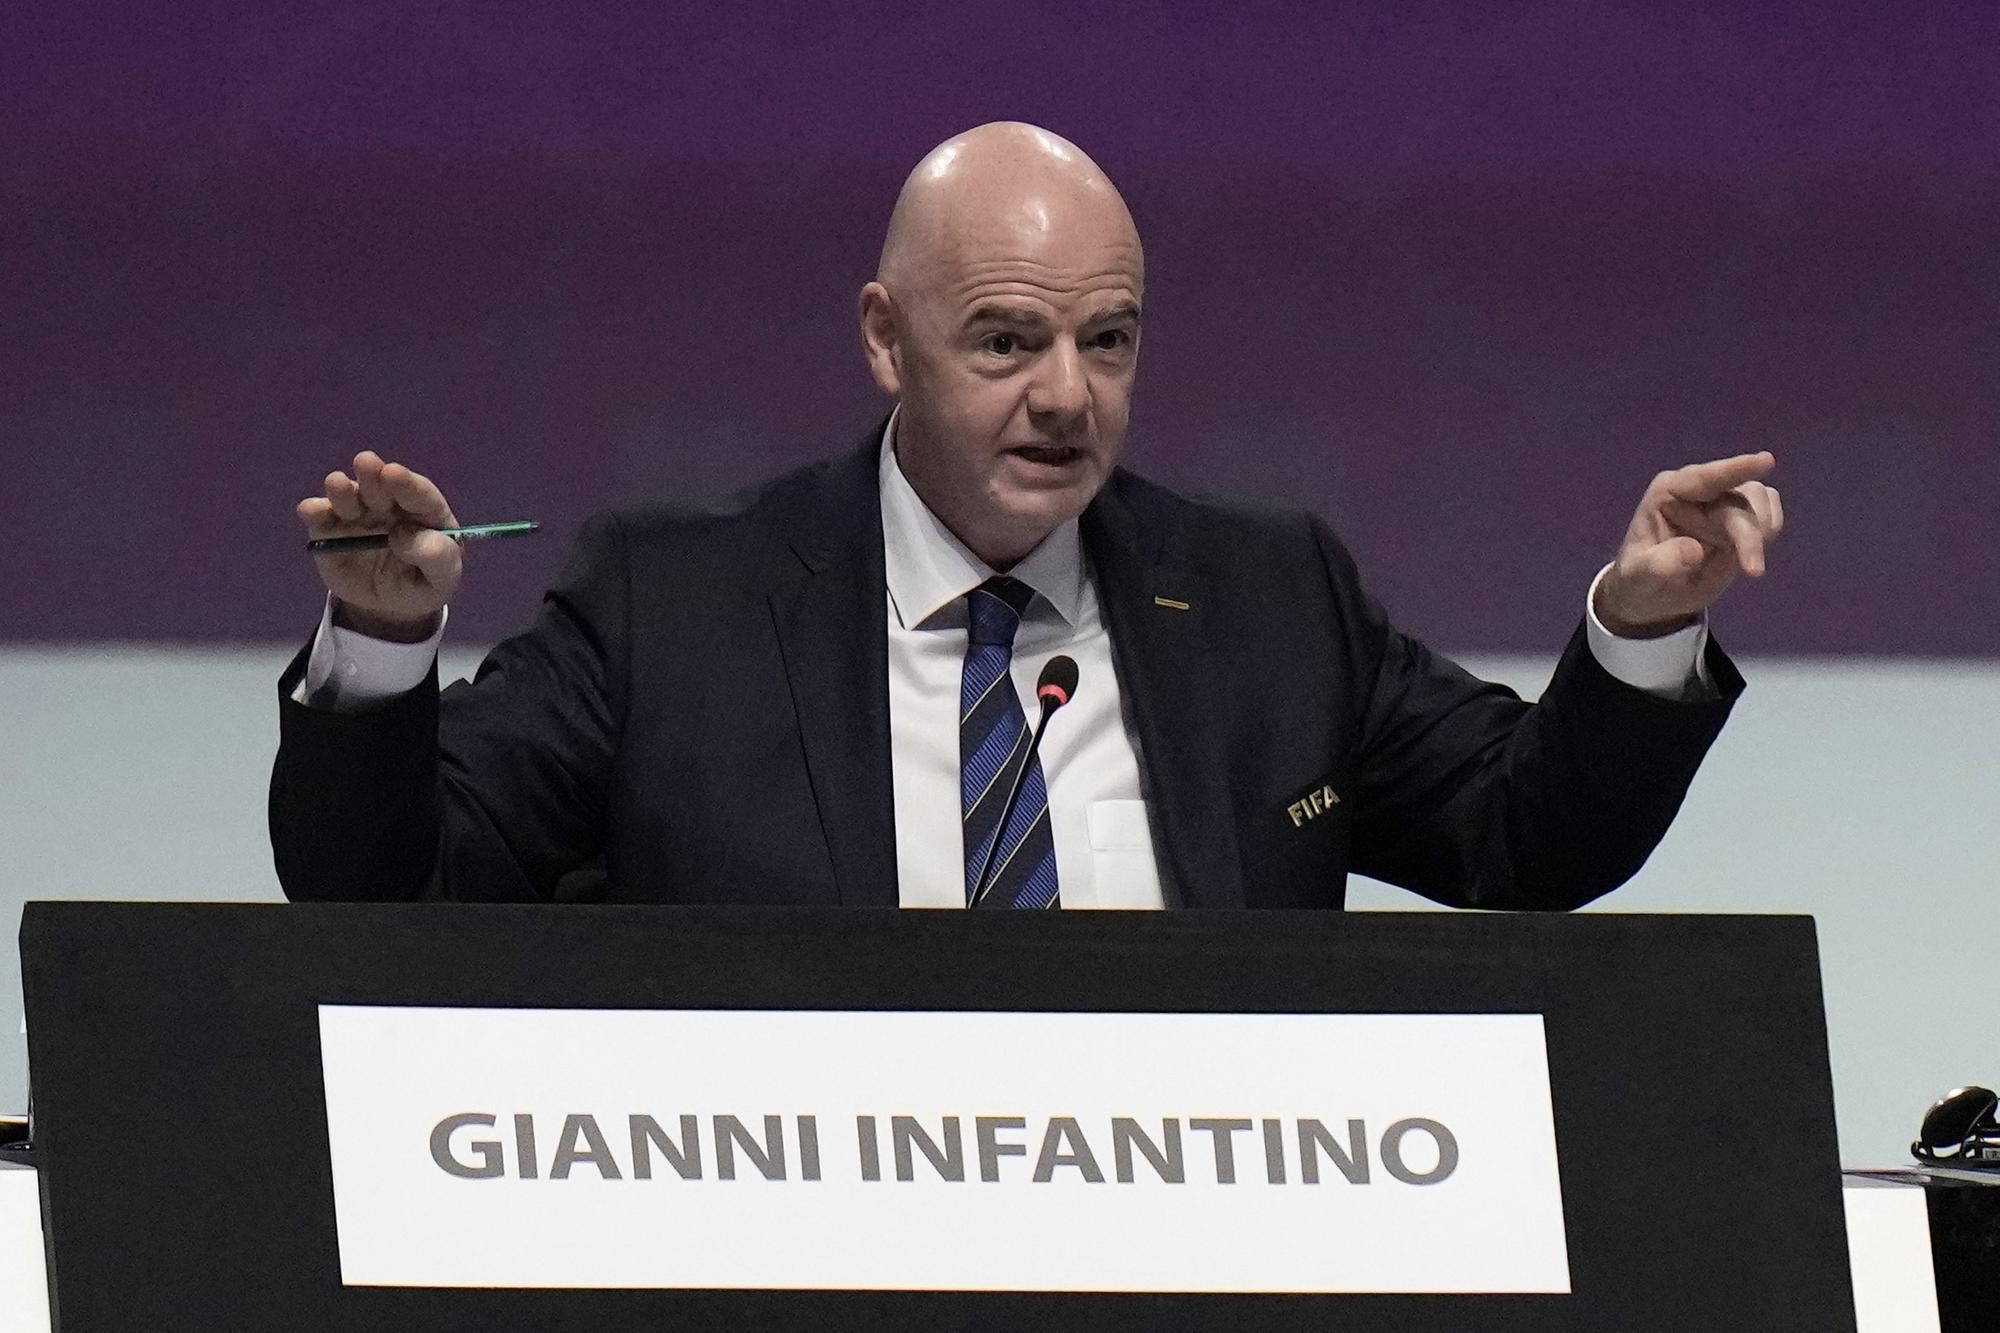 Švajčiar Gianni Infantino na štvrtkovom kongrese oznámil svoju opätovnú kandidatúru na post prezidenta FIFA.